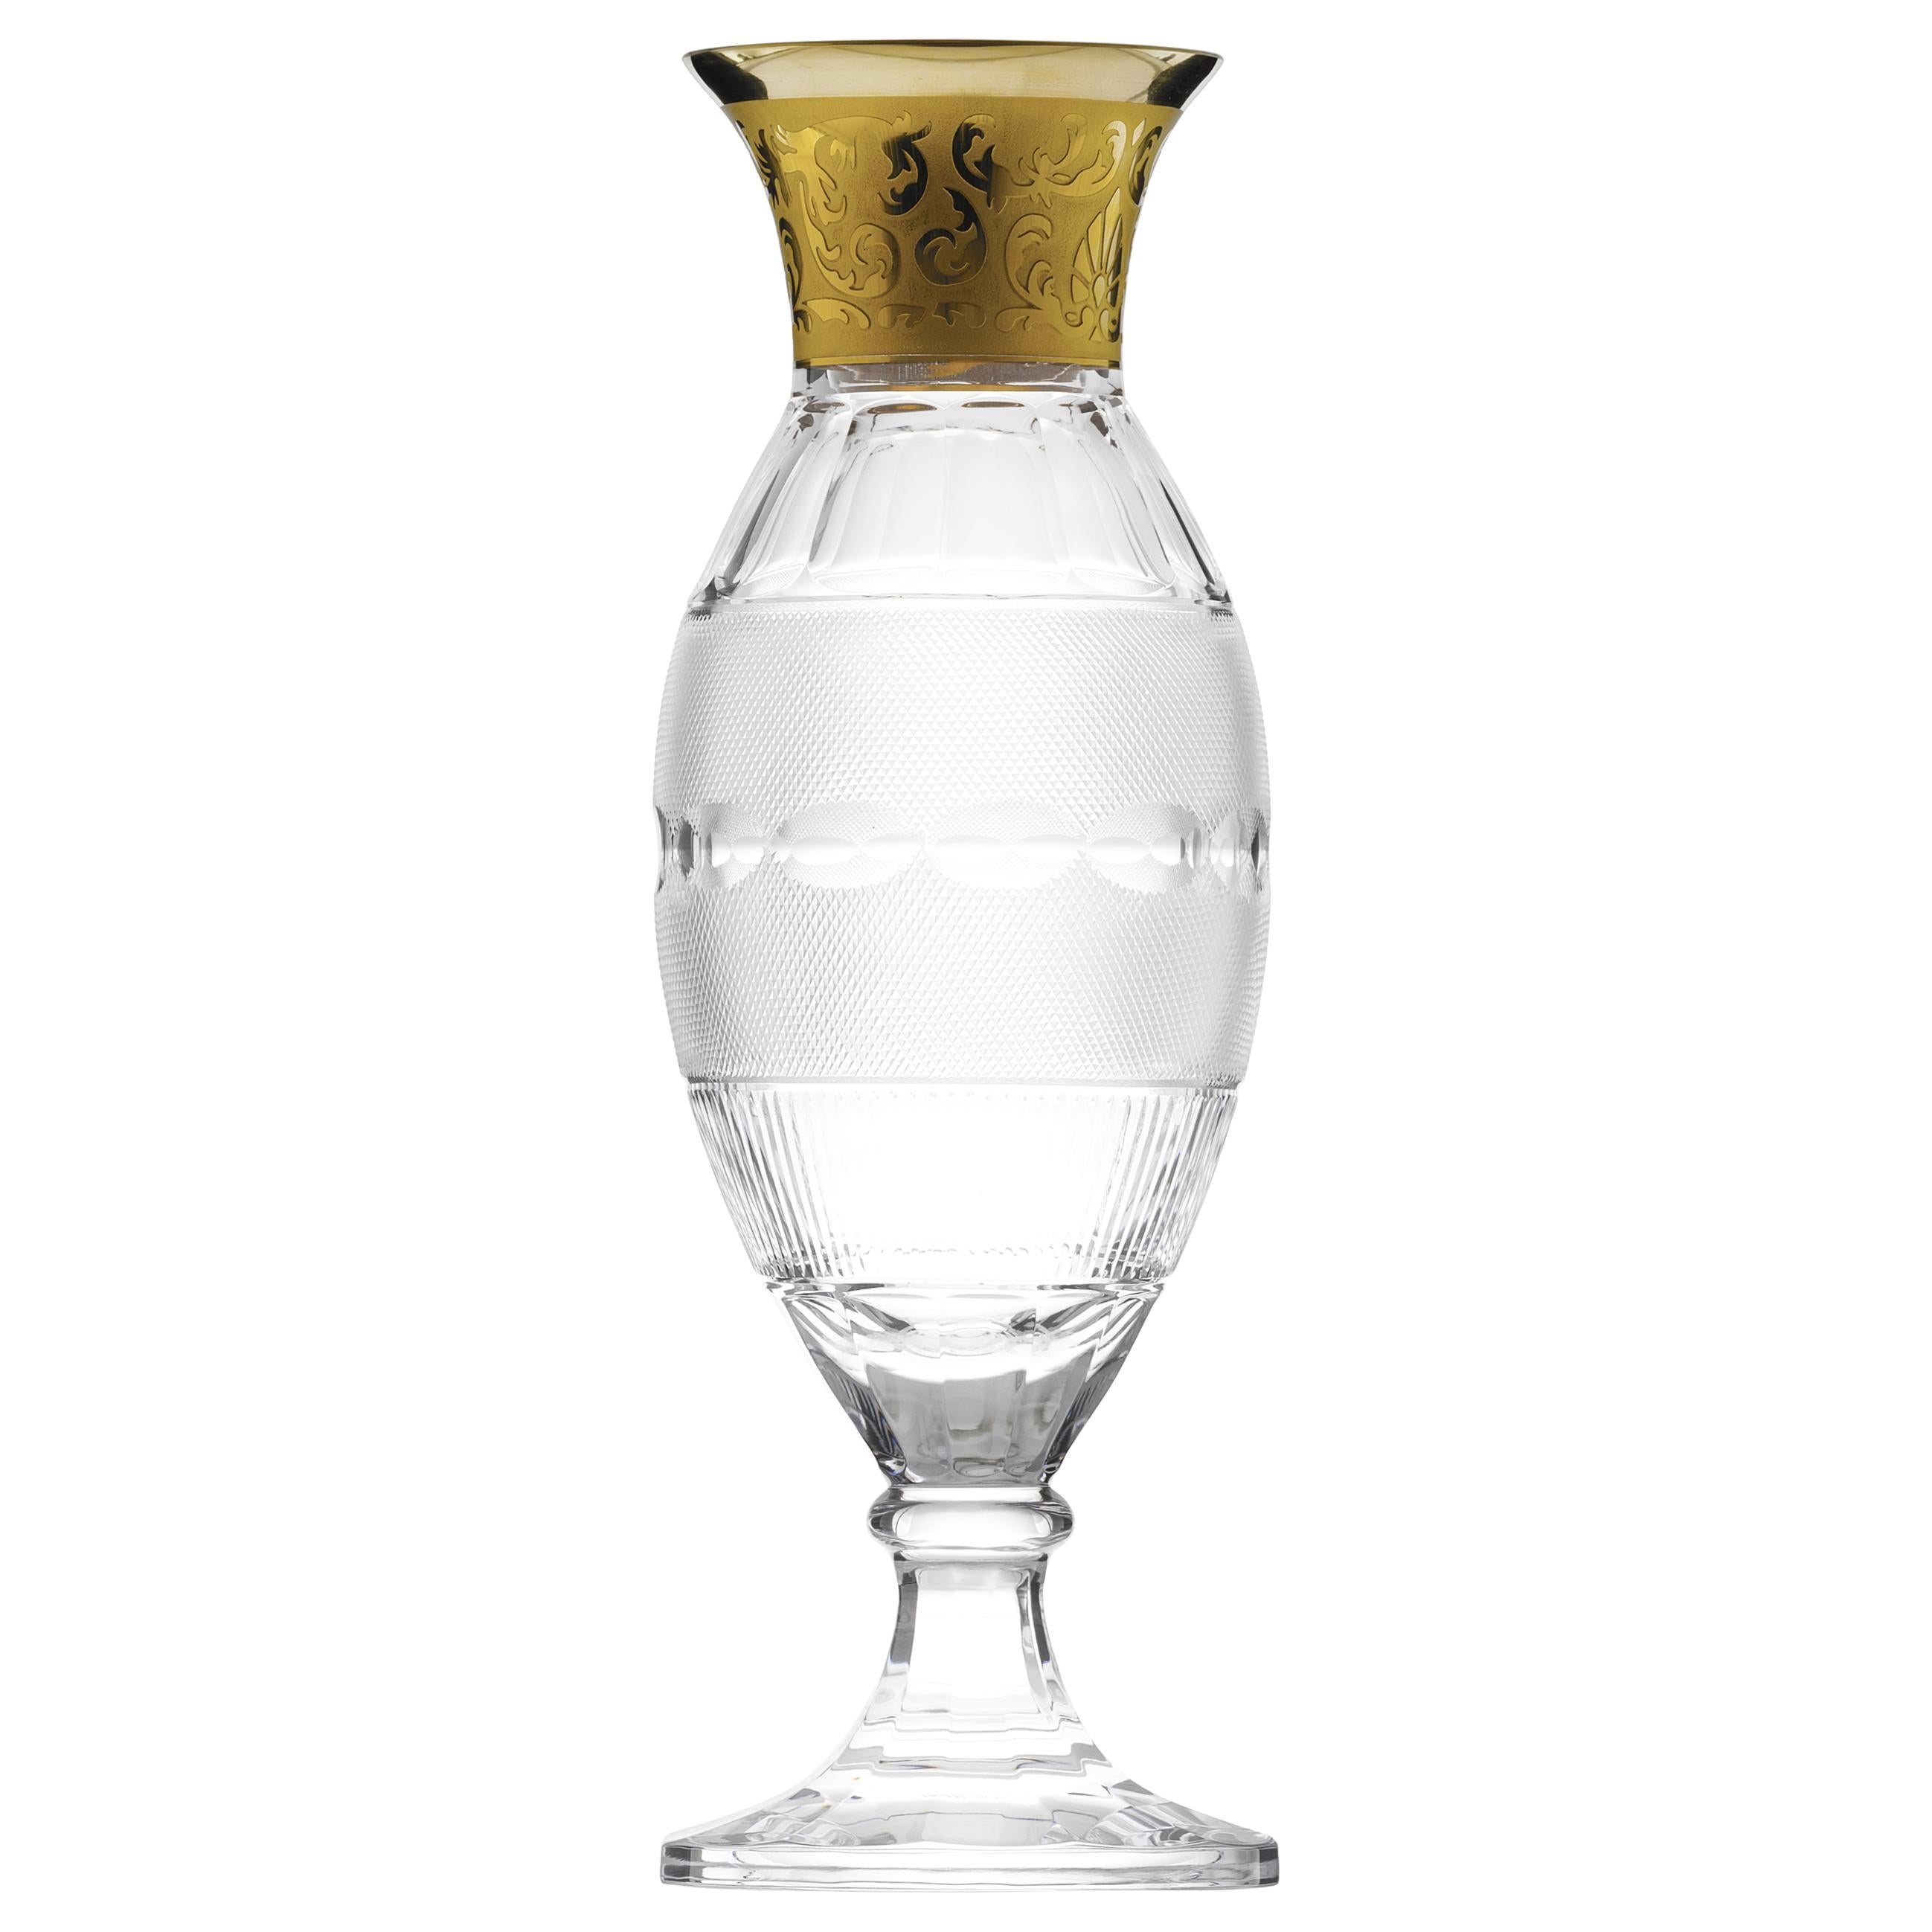 Splendid Vase Decorated with 24-Karat Gold For Sale